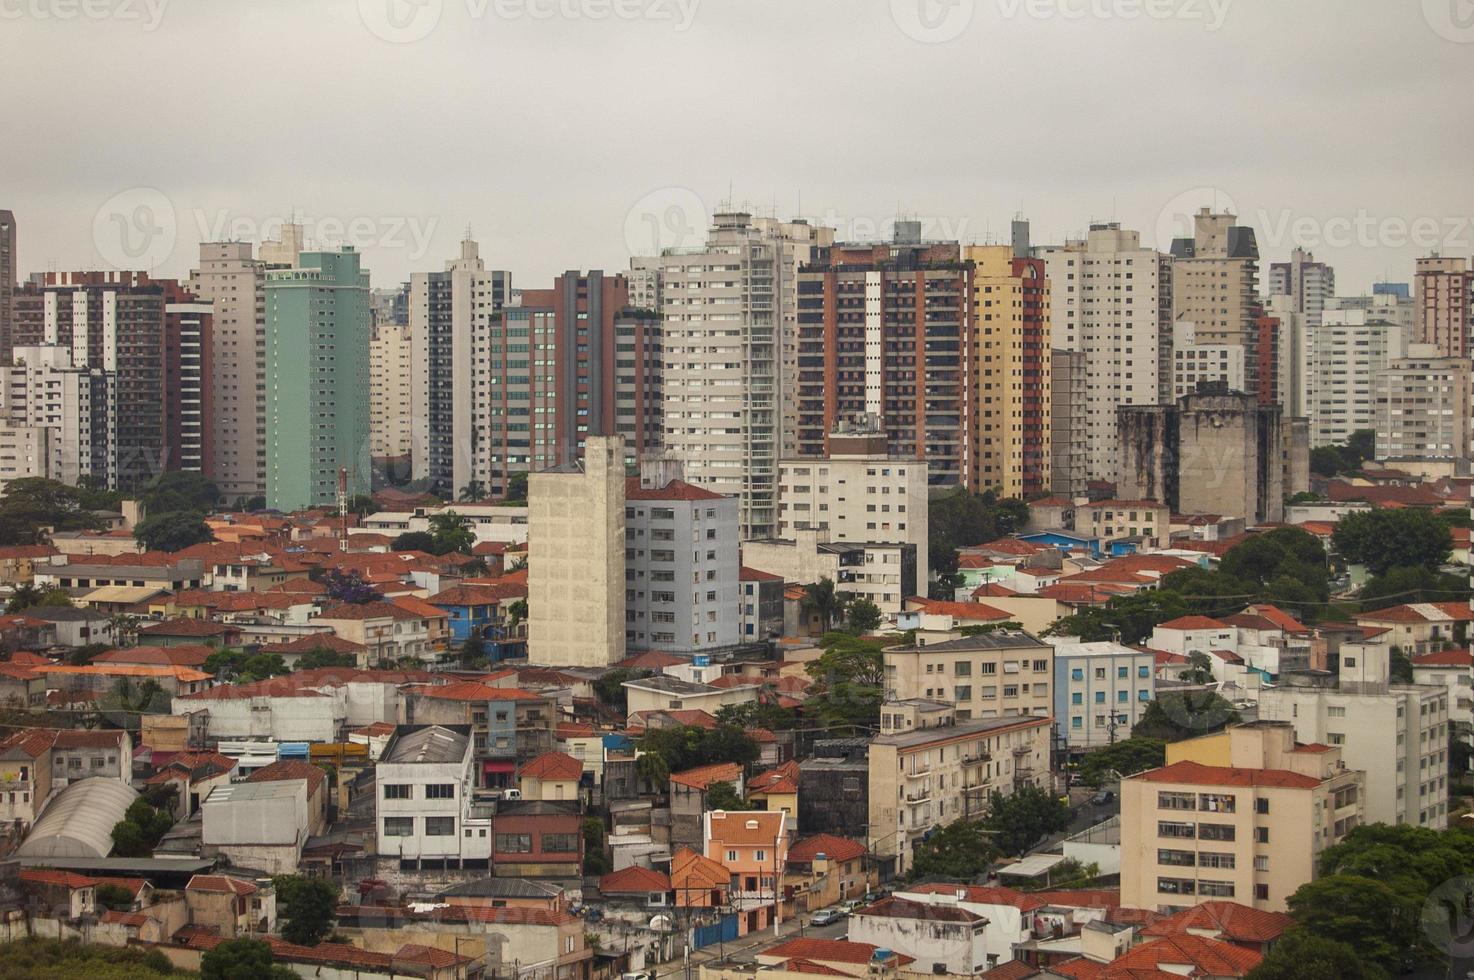 vue sur l'horizon avec divers bâtiments et gratte-ciel dans la ville de sao paulo photo